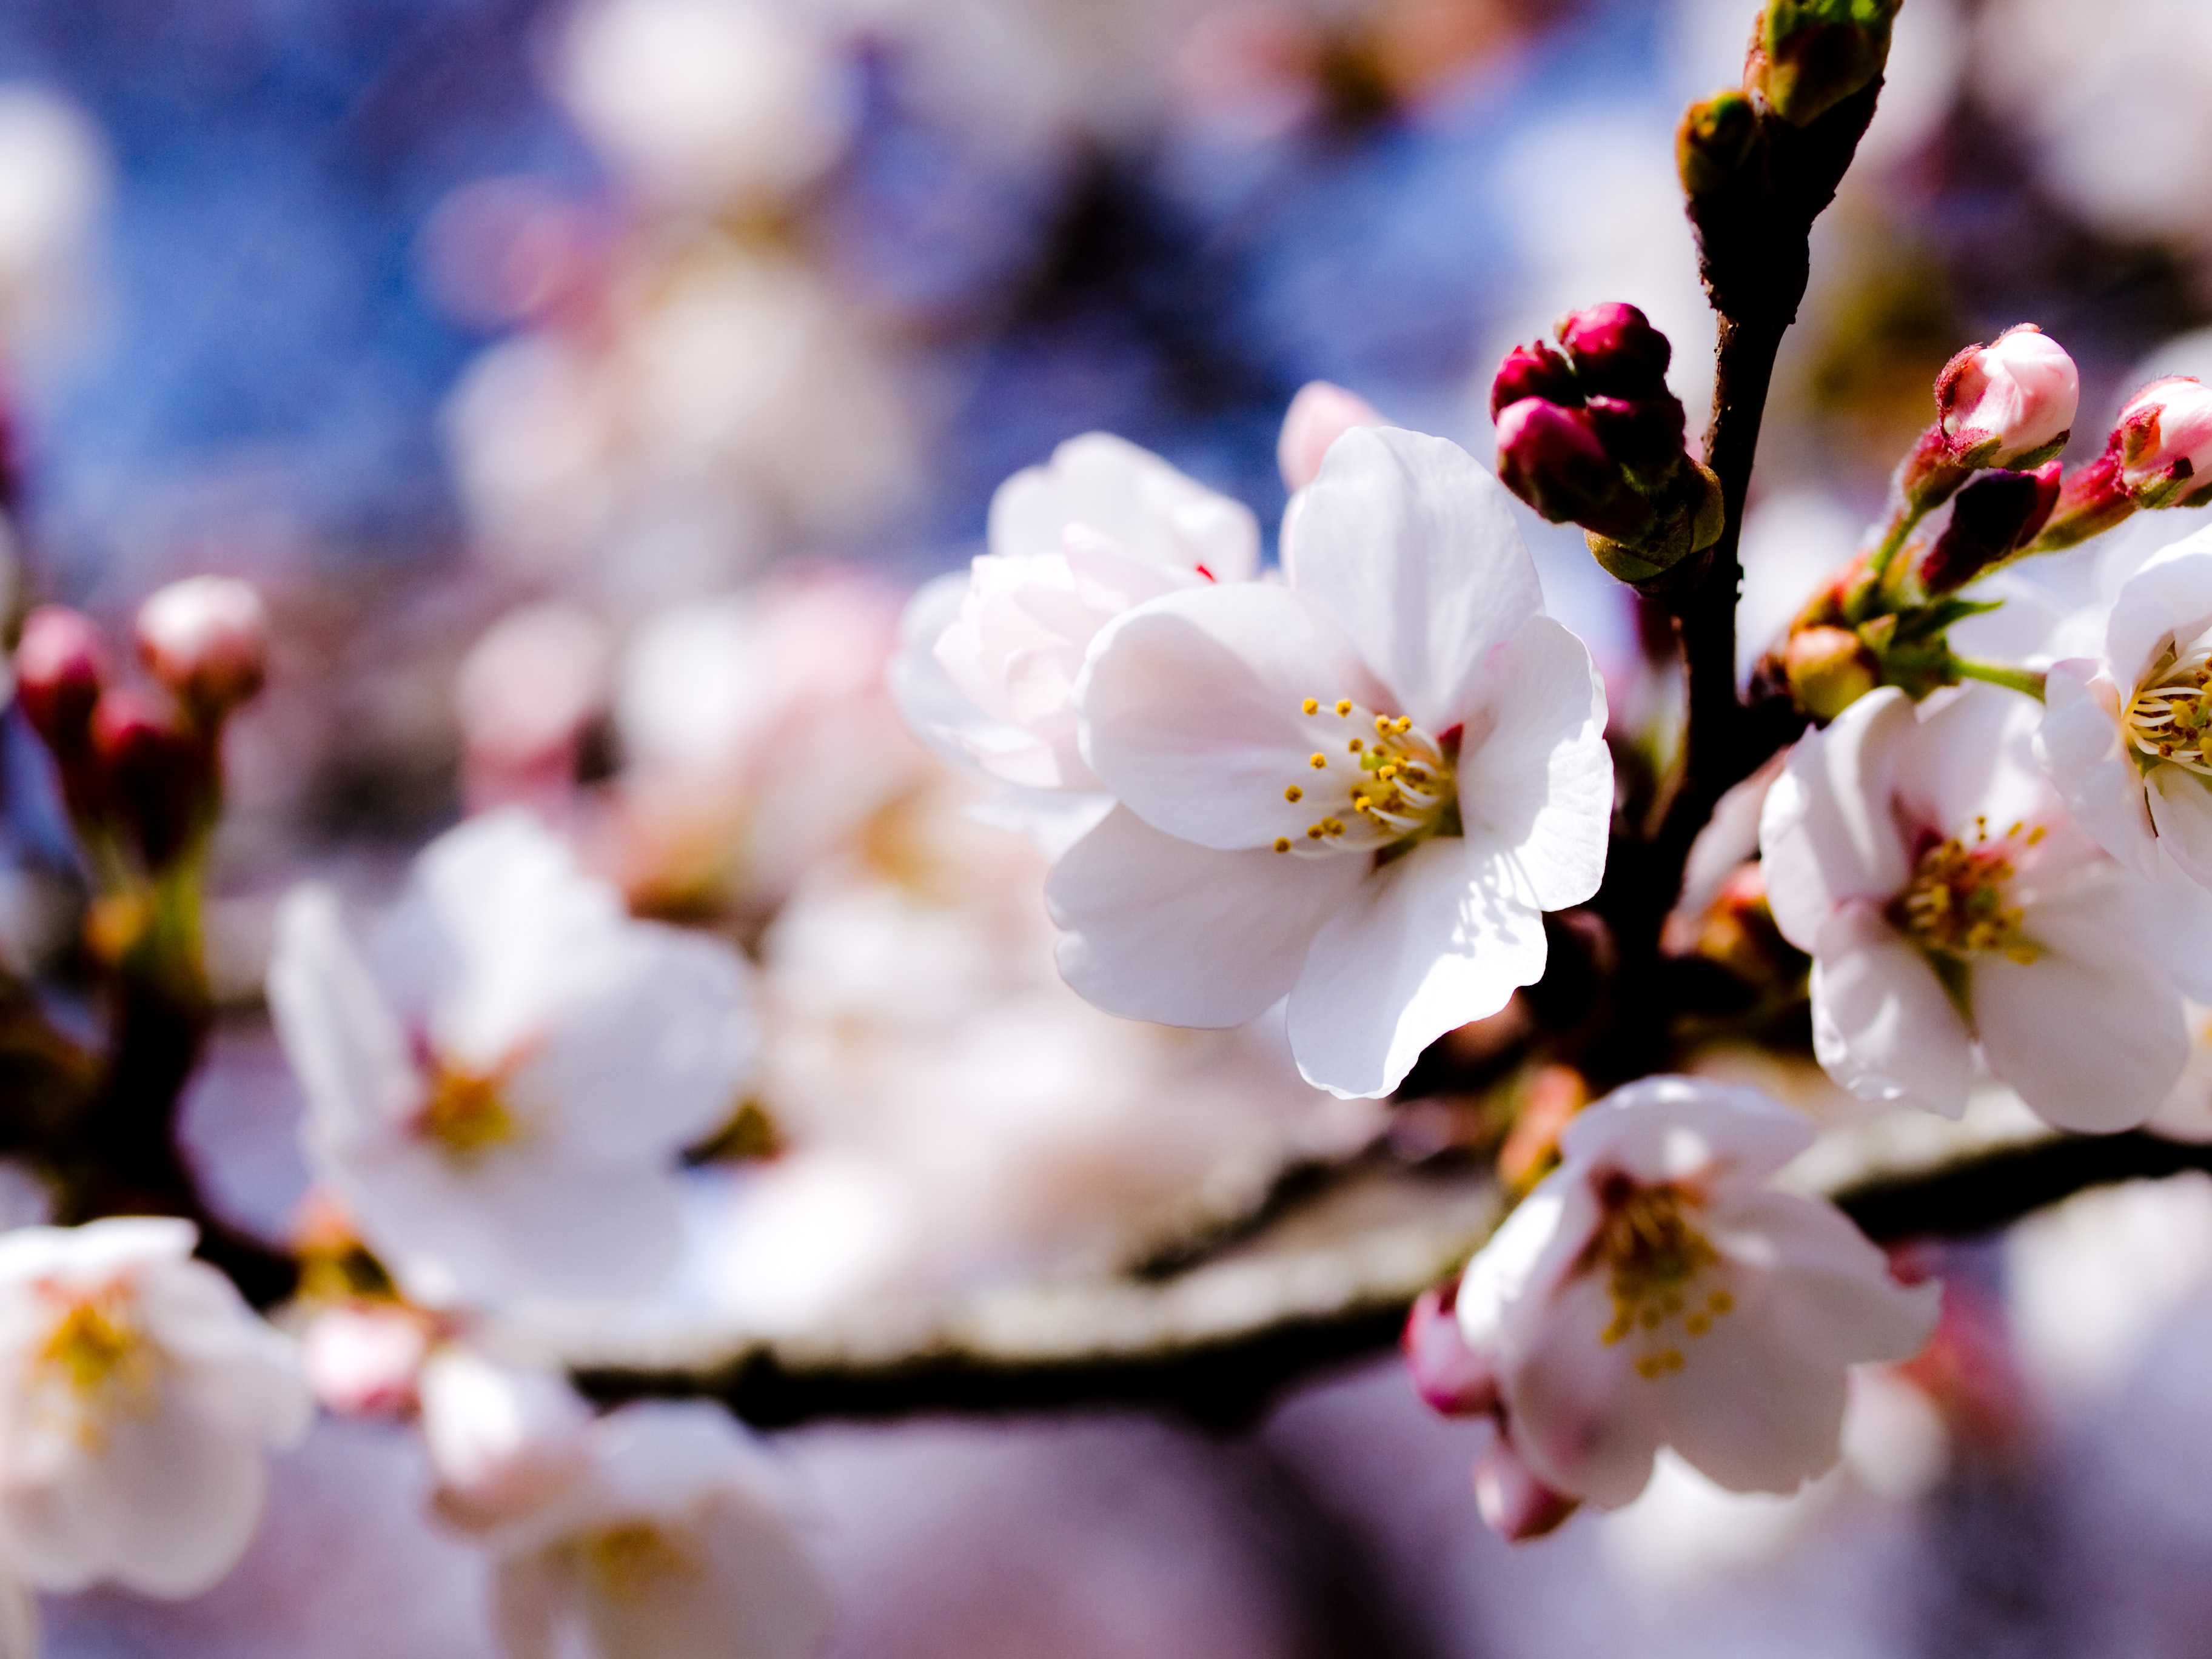 Vesna. Уайт-спринг. Весна. Цветение деревьев. Цветы яблони.